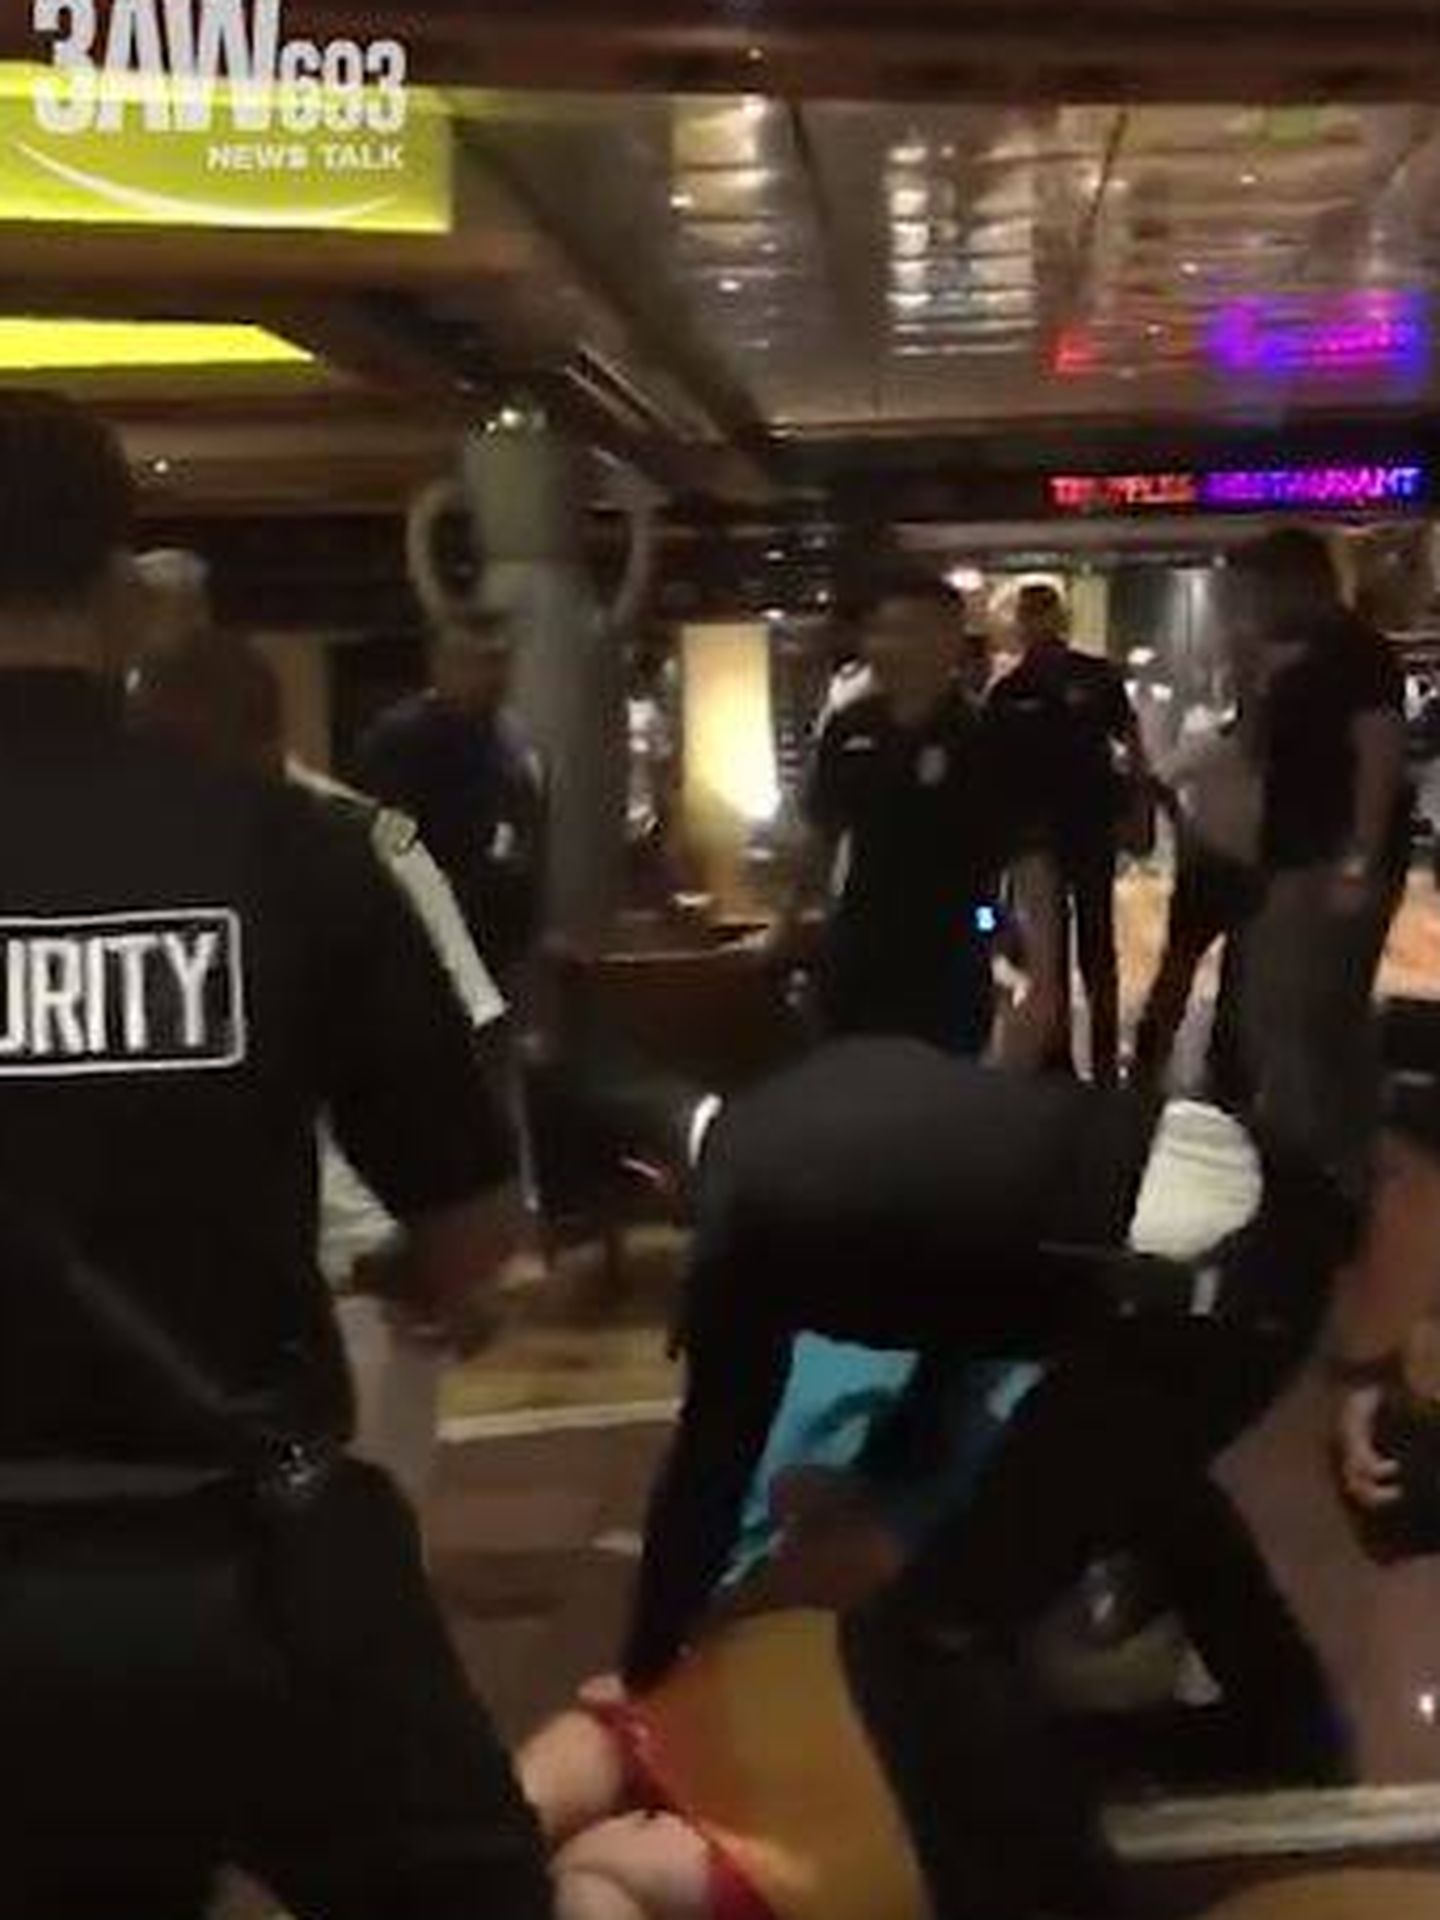 En el vídeo se aprecia cómo los guardias de seguridad del crucero la emprenden a patadas contra varios pasajeros.